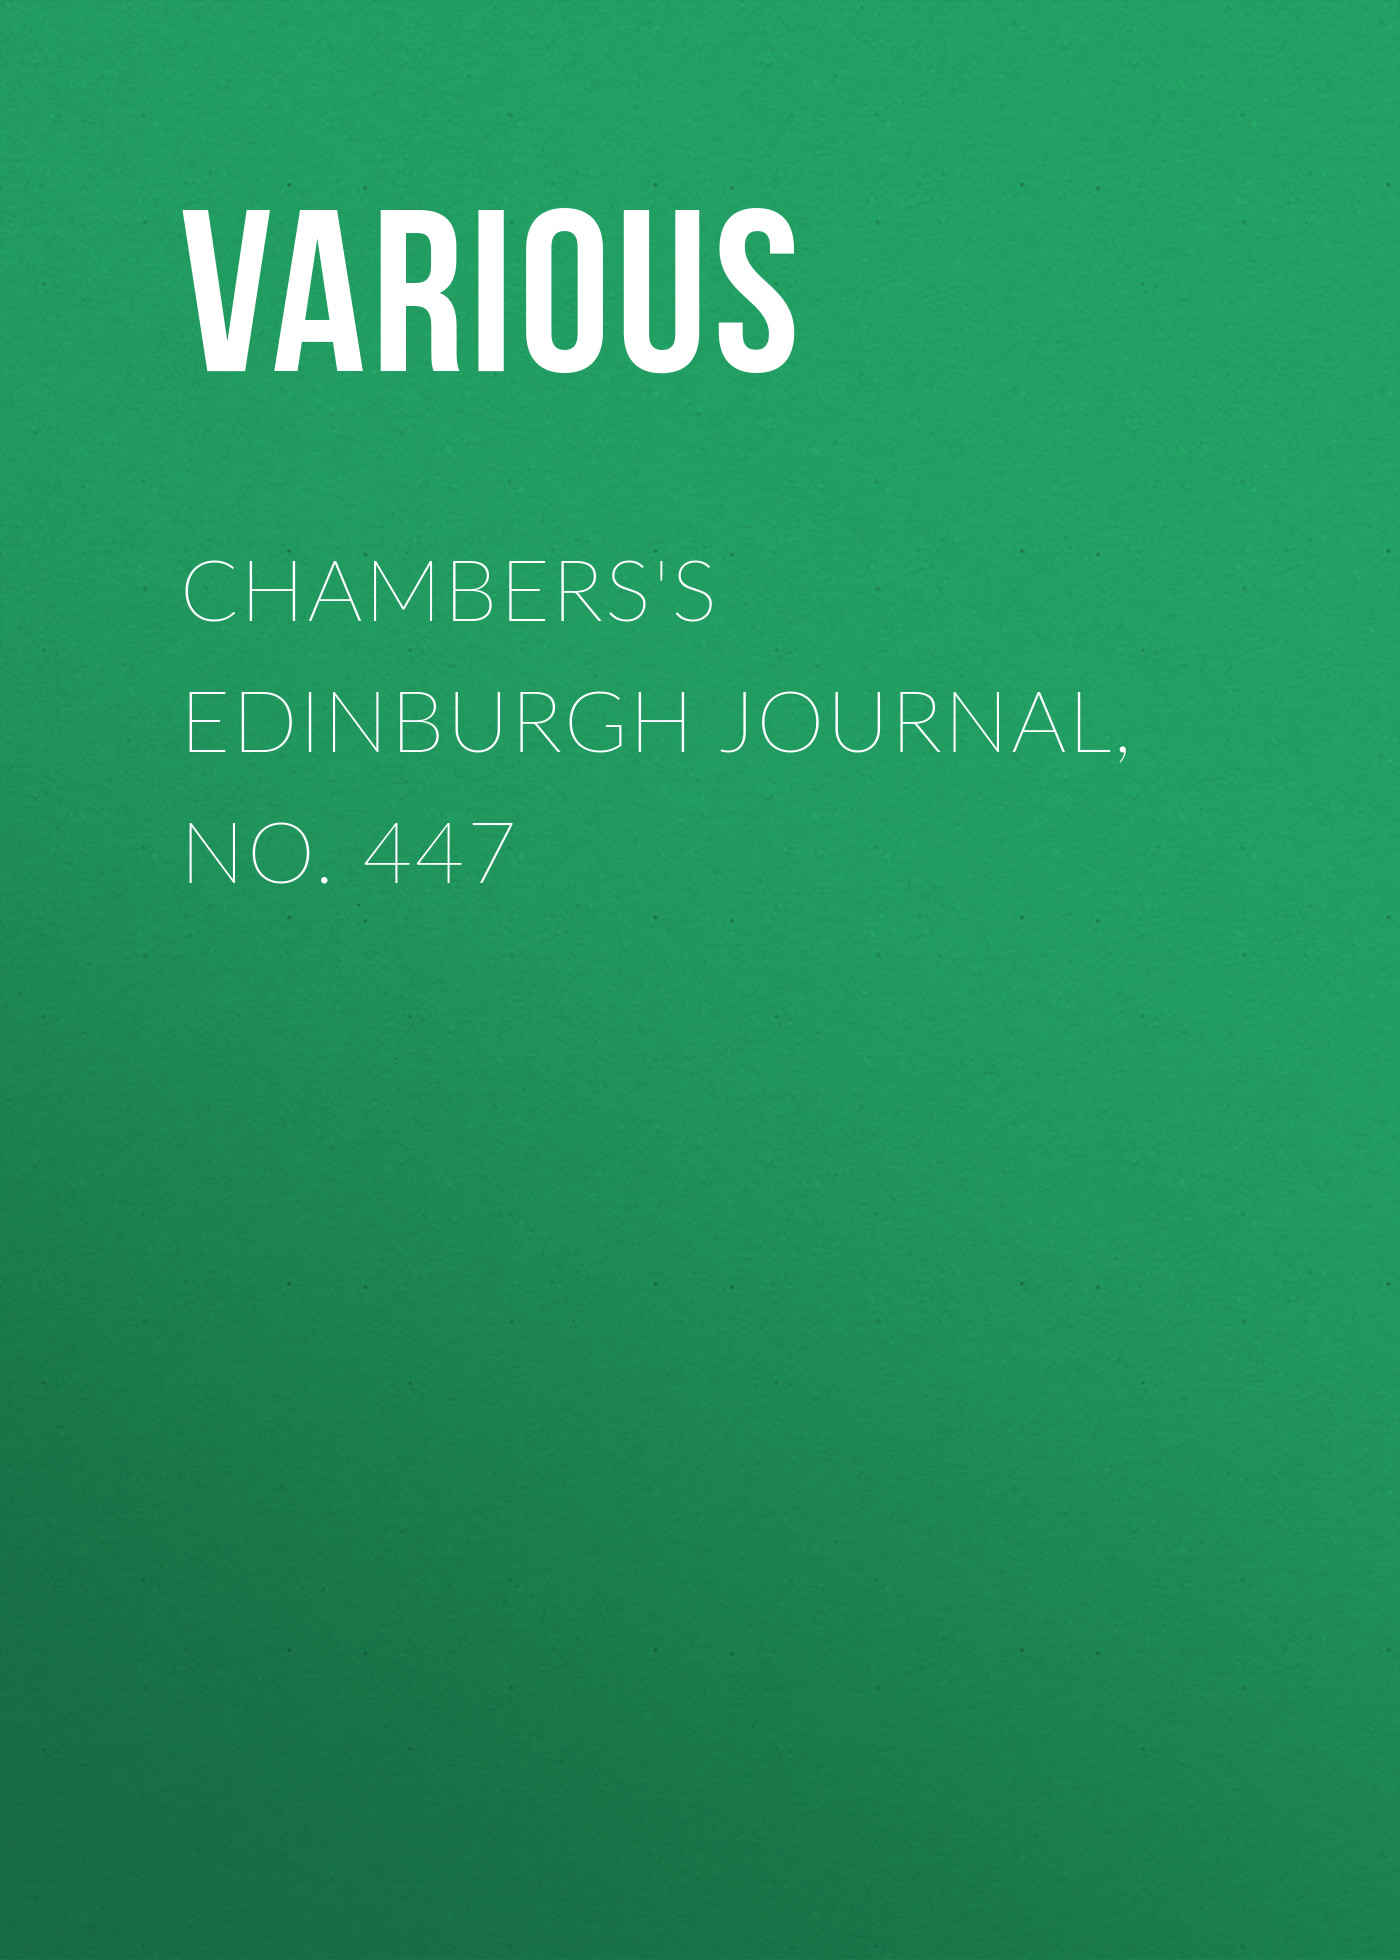 Книга Chambers's Edinburgh Journal, No. 447 из серии , созданная  Various, может относится к жанру Зарубежная старинная литература, Журналы, Зарубежная образовательная литература. Стоимость электронной книги Chambers's Edinburgh Journal, No. 447 с идентификатором 35492335 составляет 0 руб.